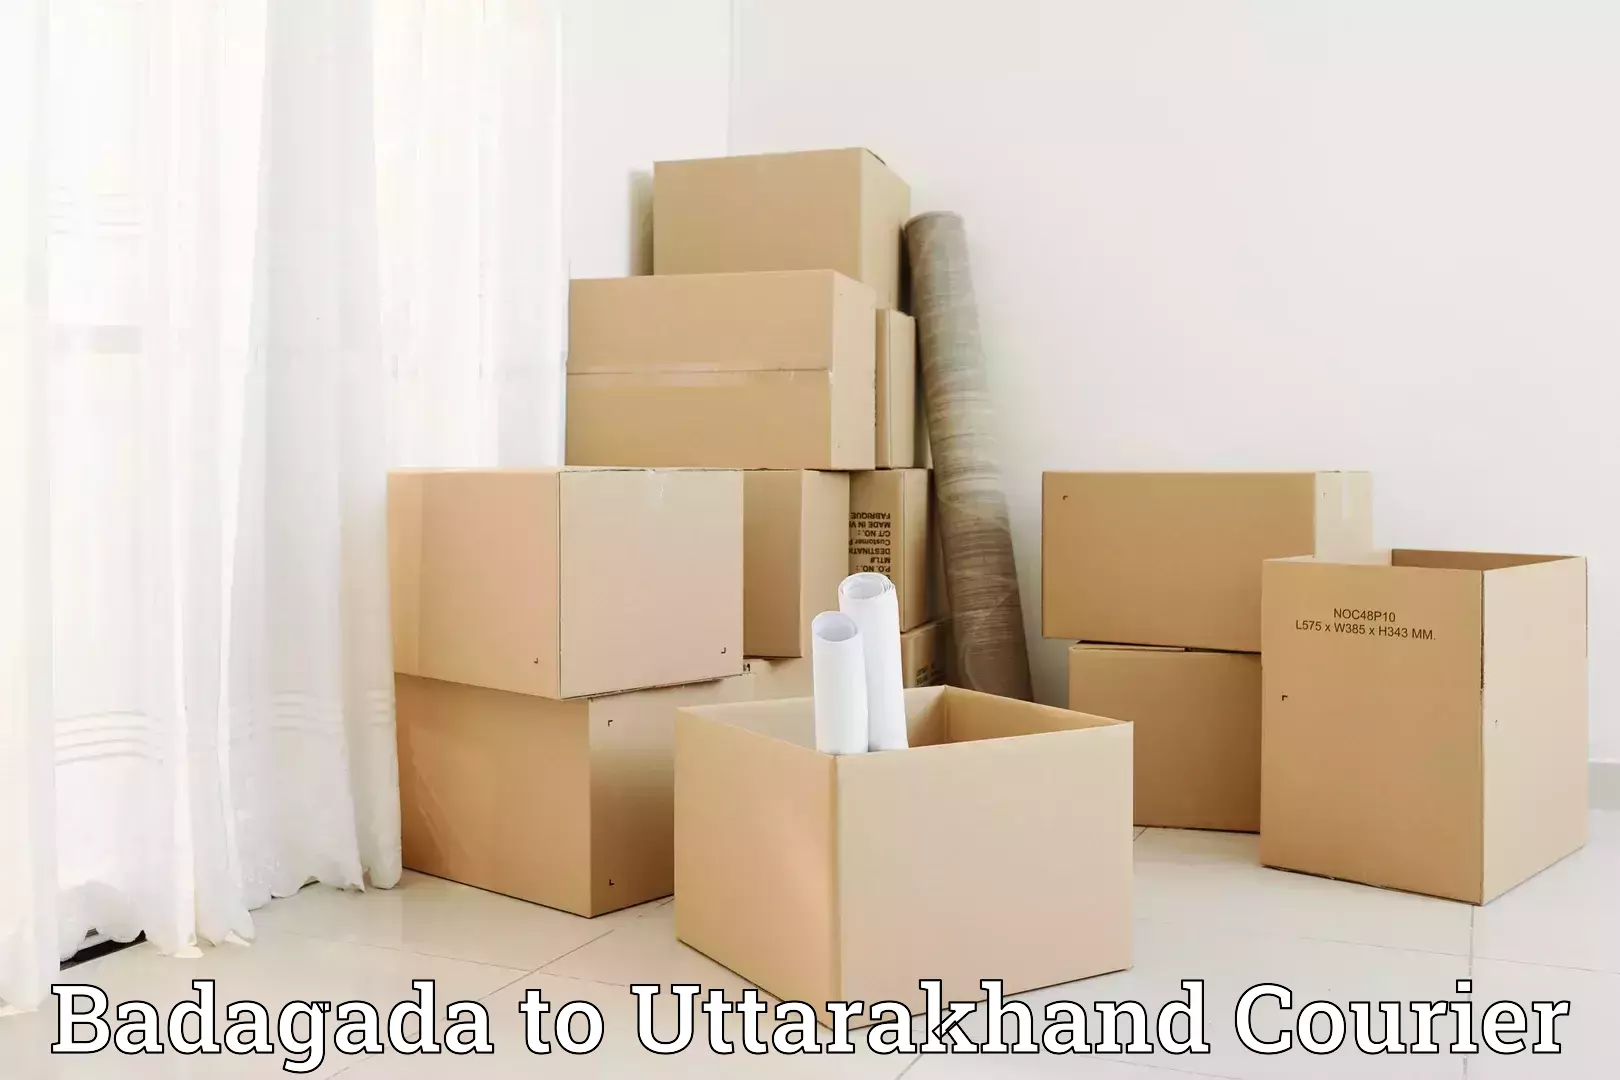 Nationwide furniture movers Badagada to Kotdwara